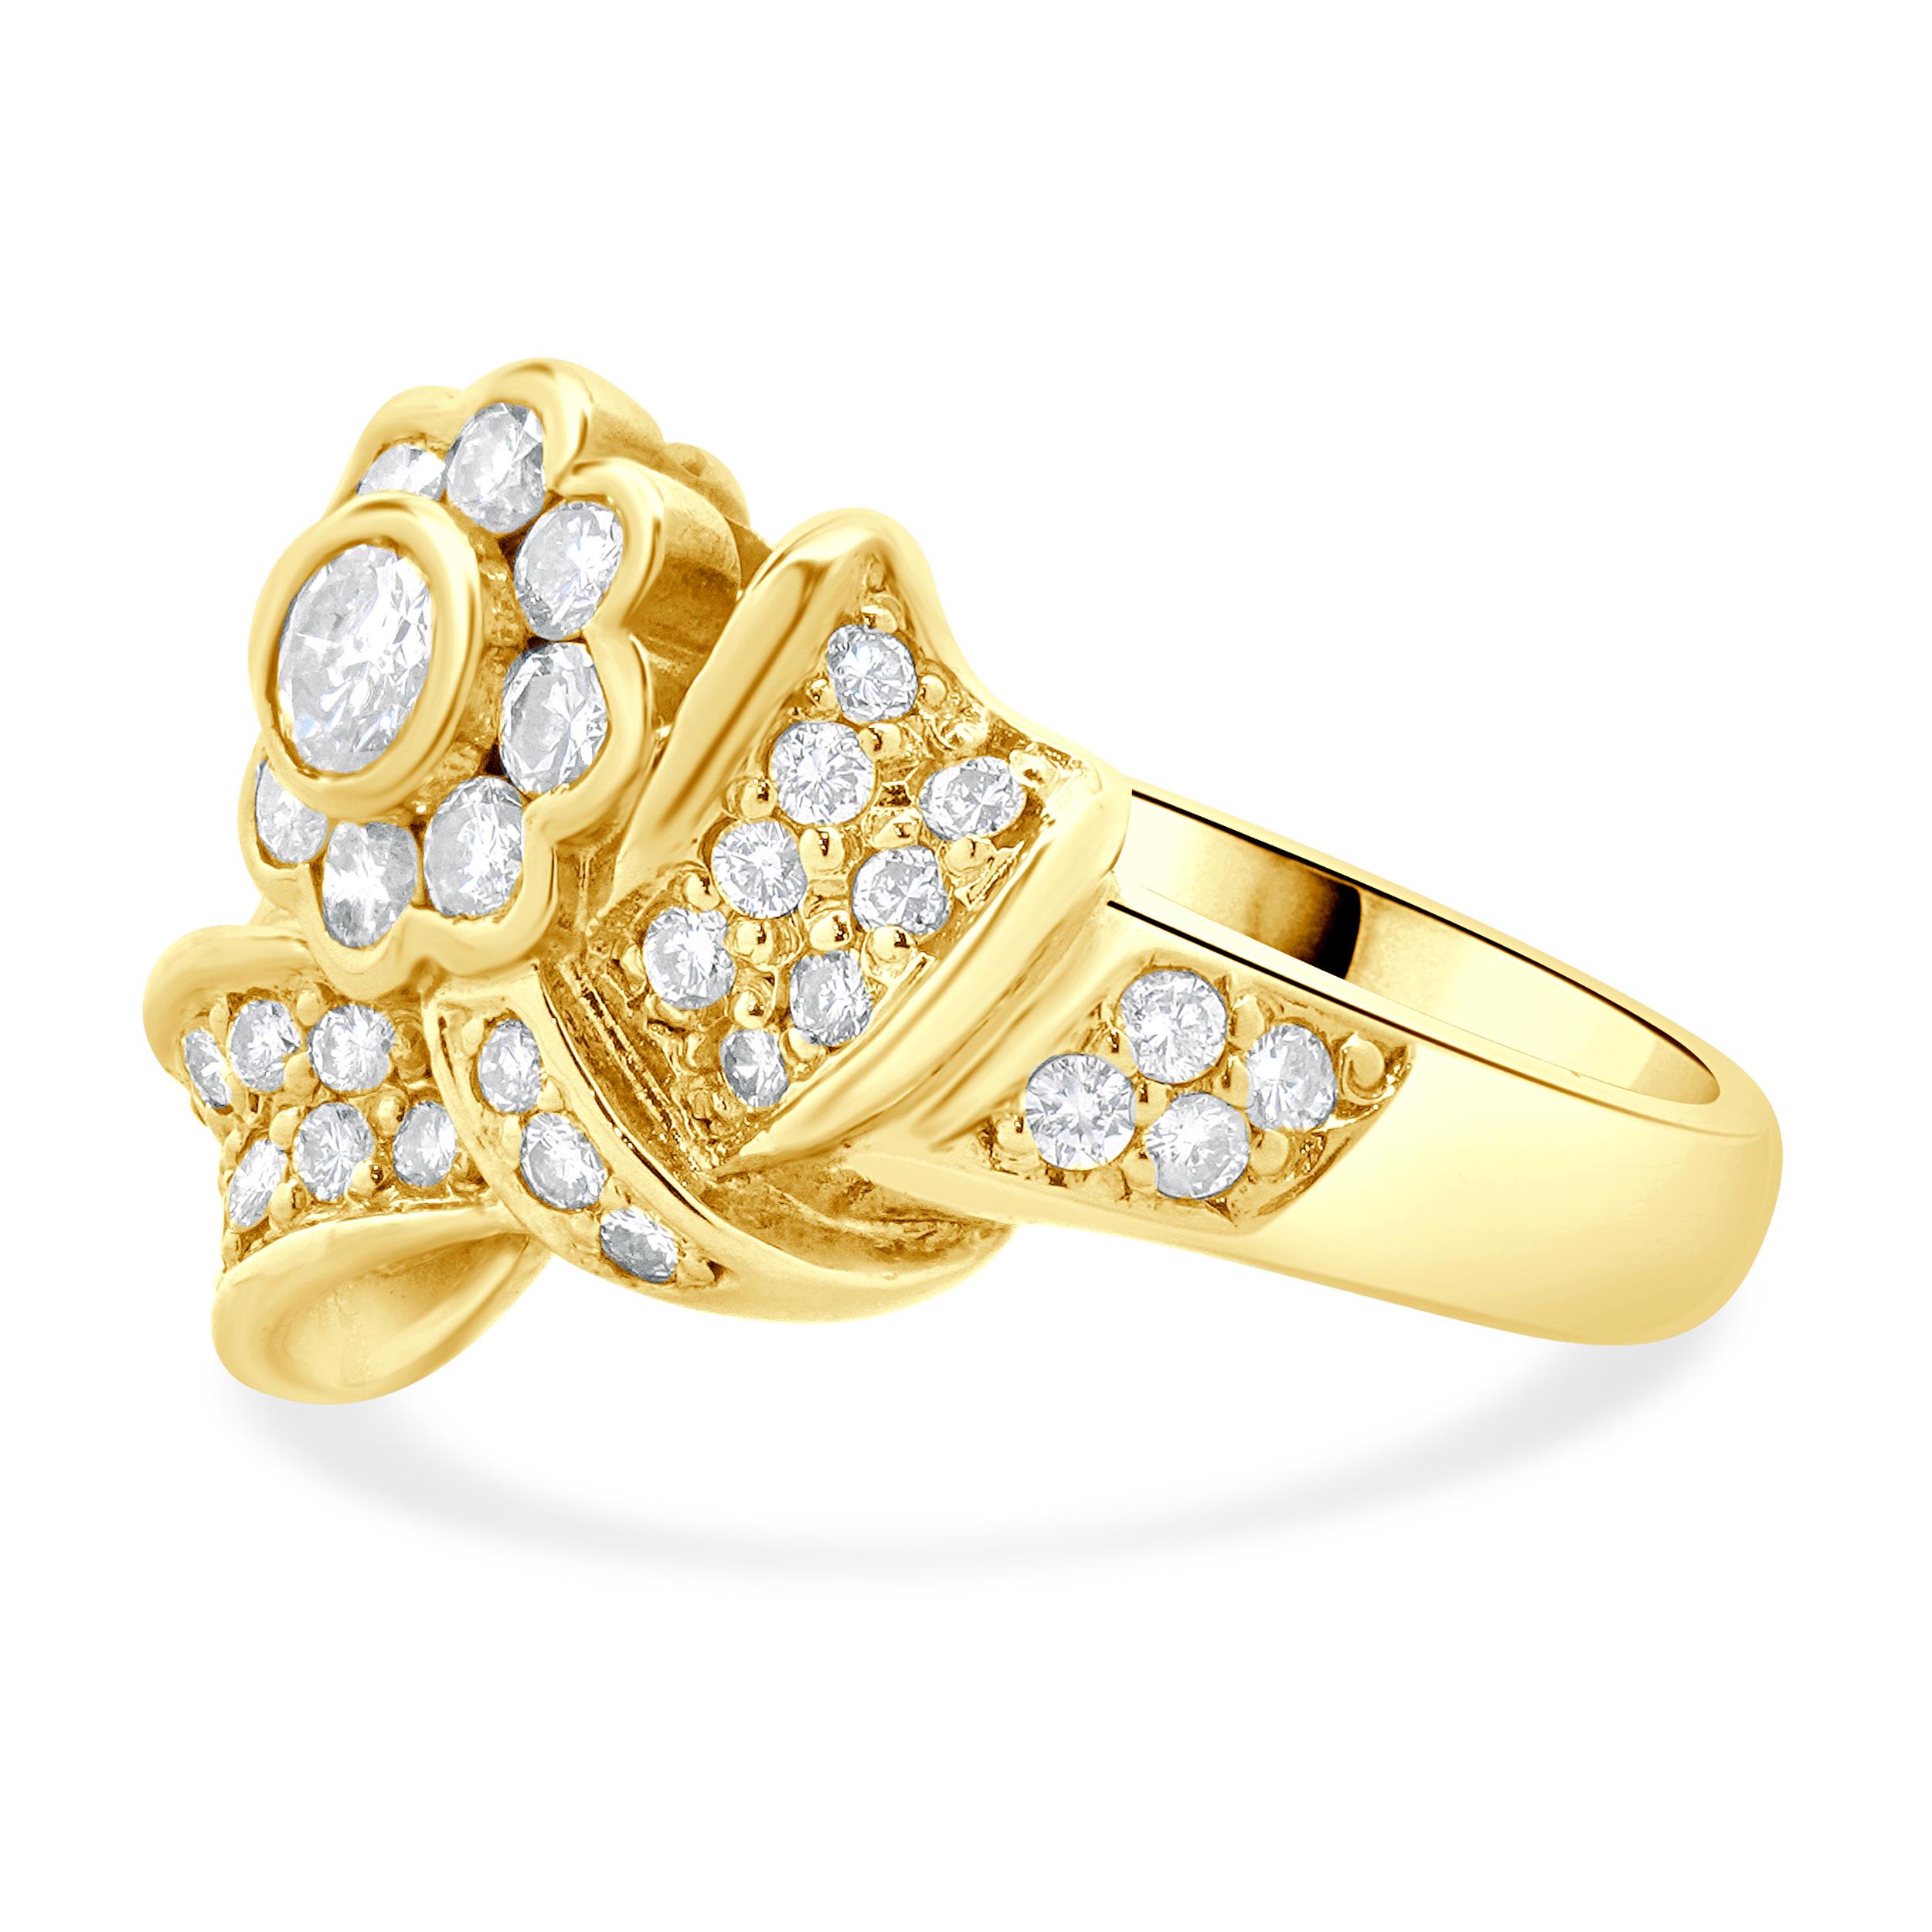 Designer: kundenspezifisch
MATERIAL: 18K Gelbgold
Diamant: 36 runde Diamanten im Brillantschliff = 0,90cttw
Farbe: H
Klarheit: SI2
Größe: 8 verschiedene Größen verfügbar 
Gewicht: 9,10 Gramm
